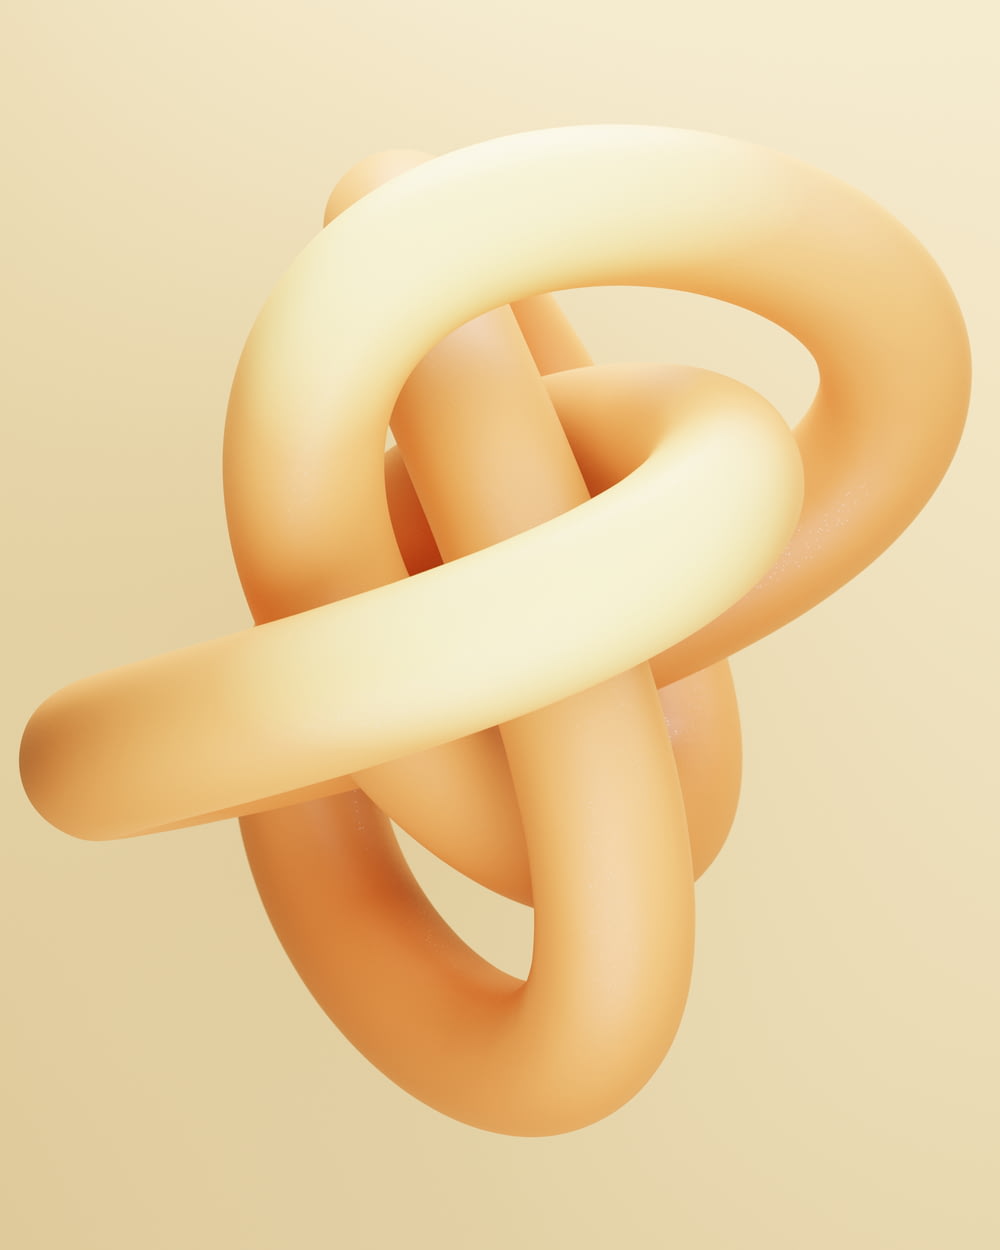 Una imagen abstracta de un nudo en forma de círculo